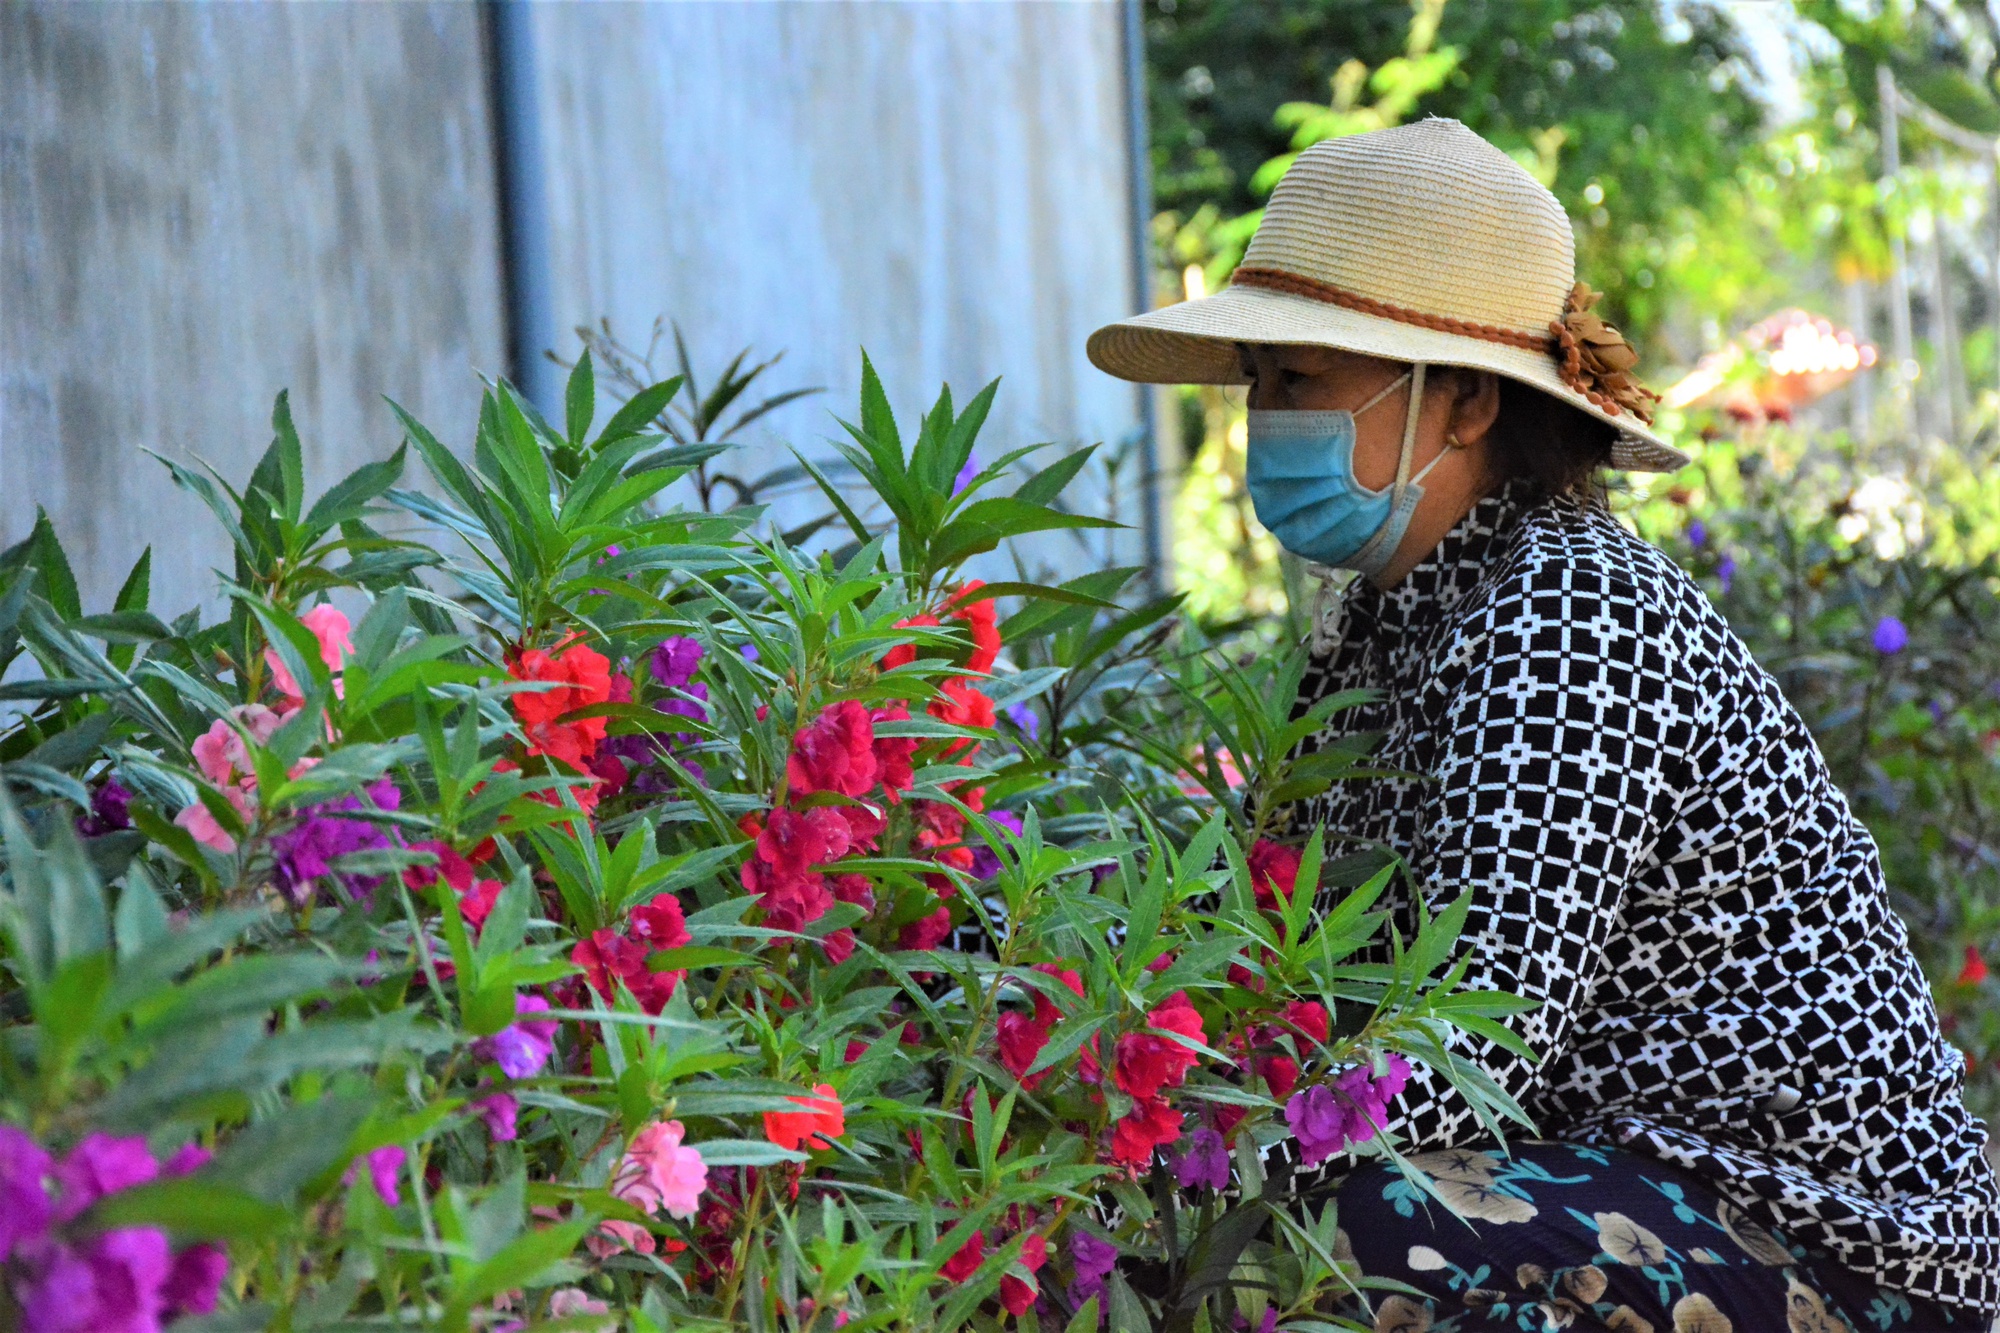 Đường hoa nông thôn mới ở Sơn Tịnh của Quảng Ngãi, làng xóm sạch, ai đi qua cũng muốn chụp hình, quay phim - Ảnh 3.